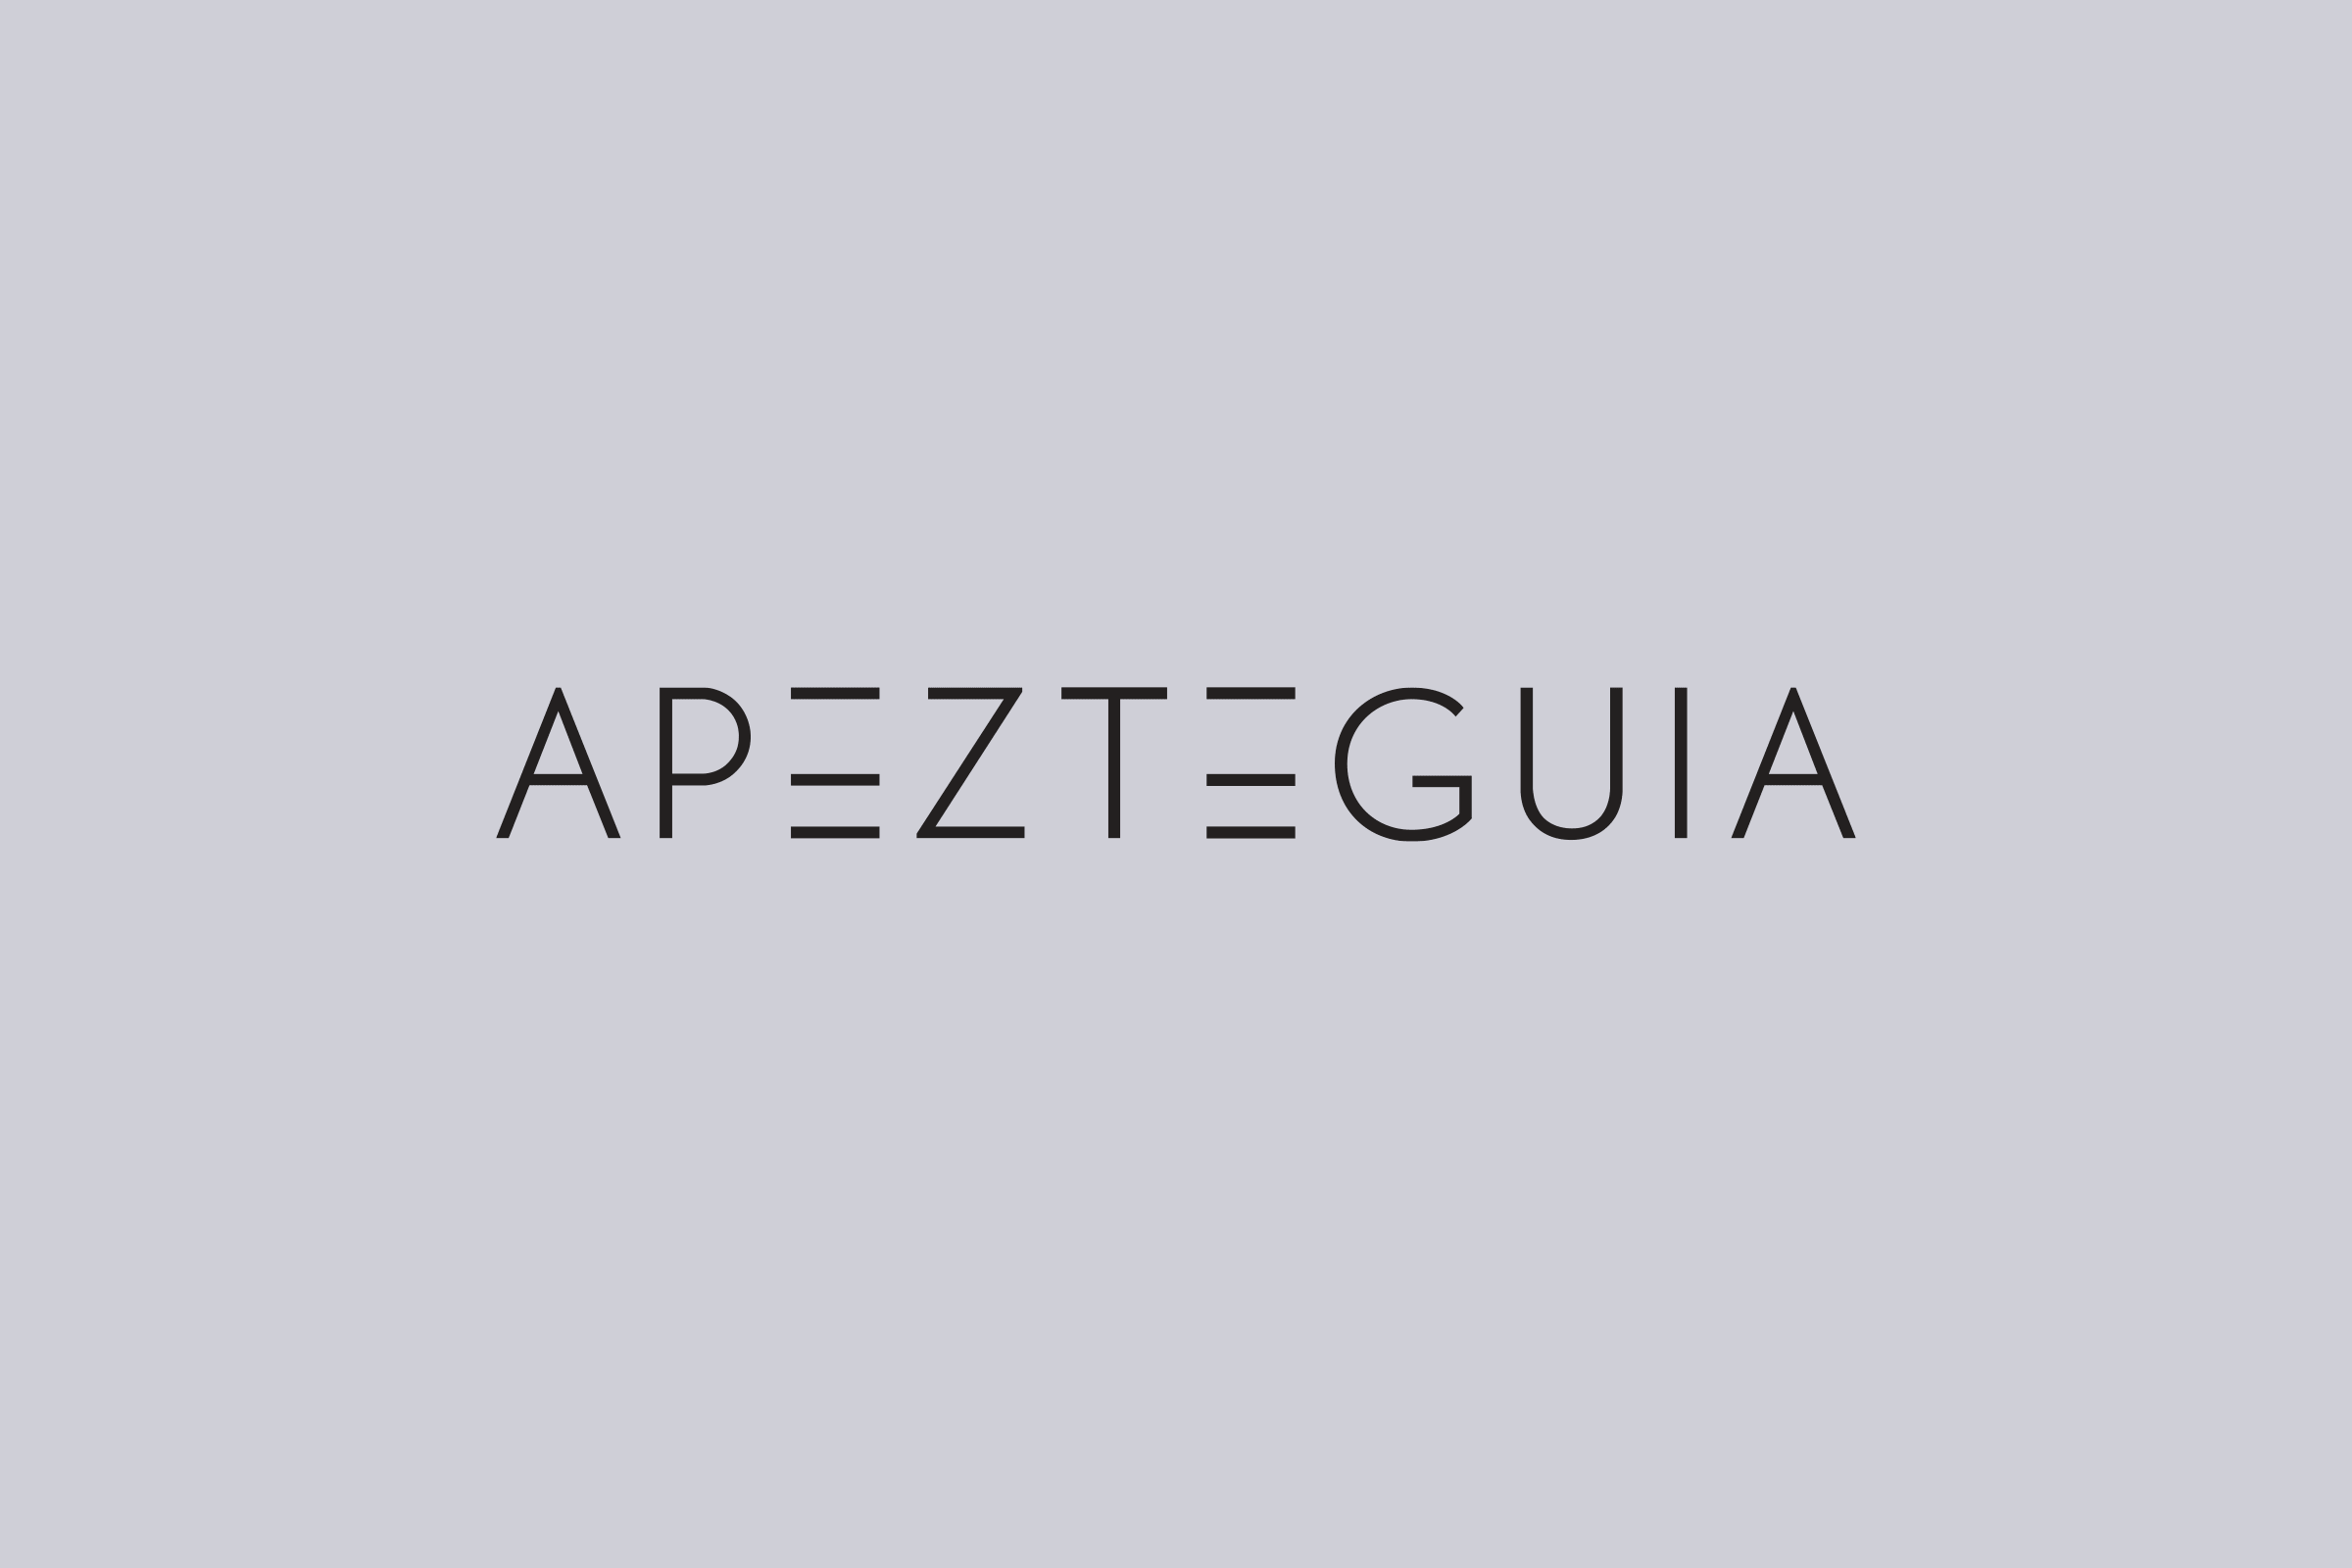 Apezteguia Architects